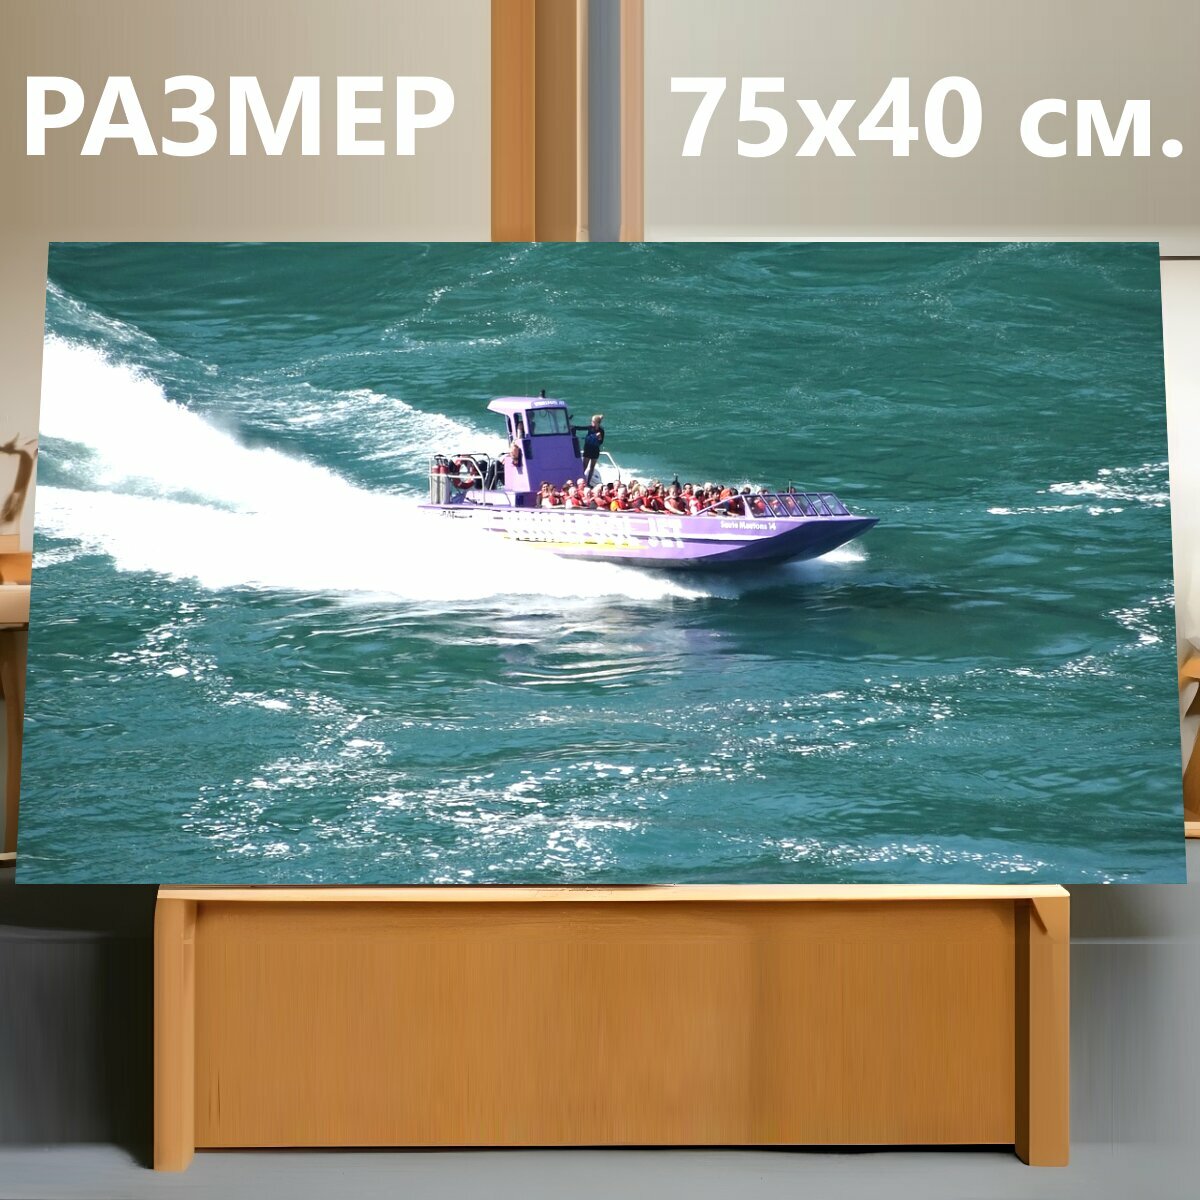 Картина на холсте "Лодка, быстроходный катер, моторная лодка" на подрамнике 75х40 см. для интерьера